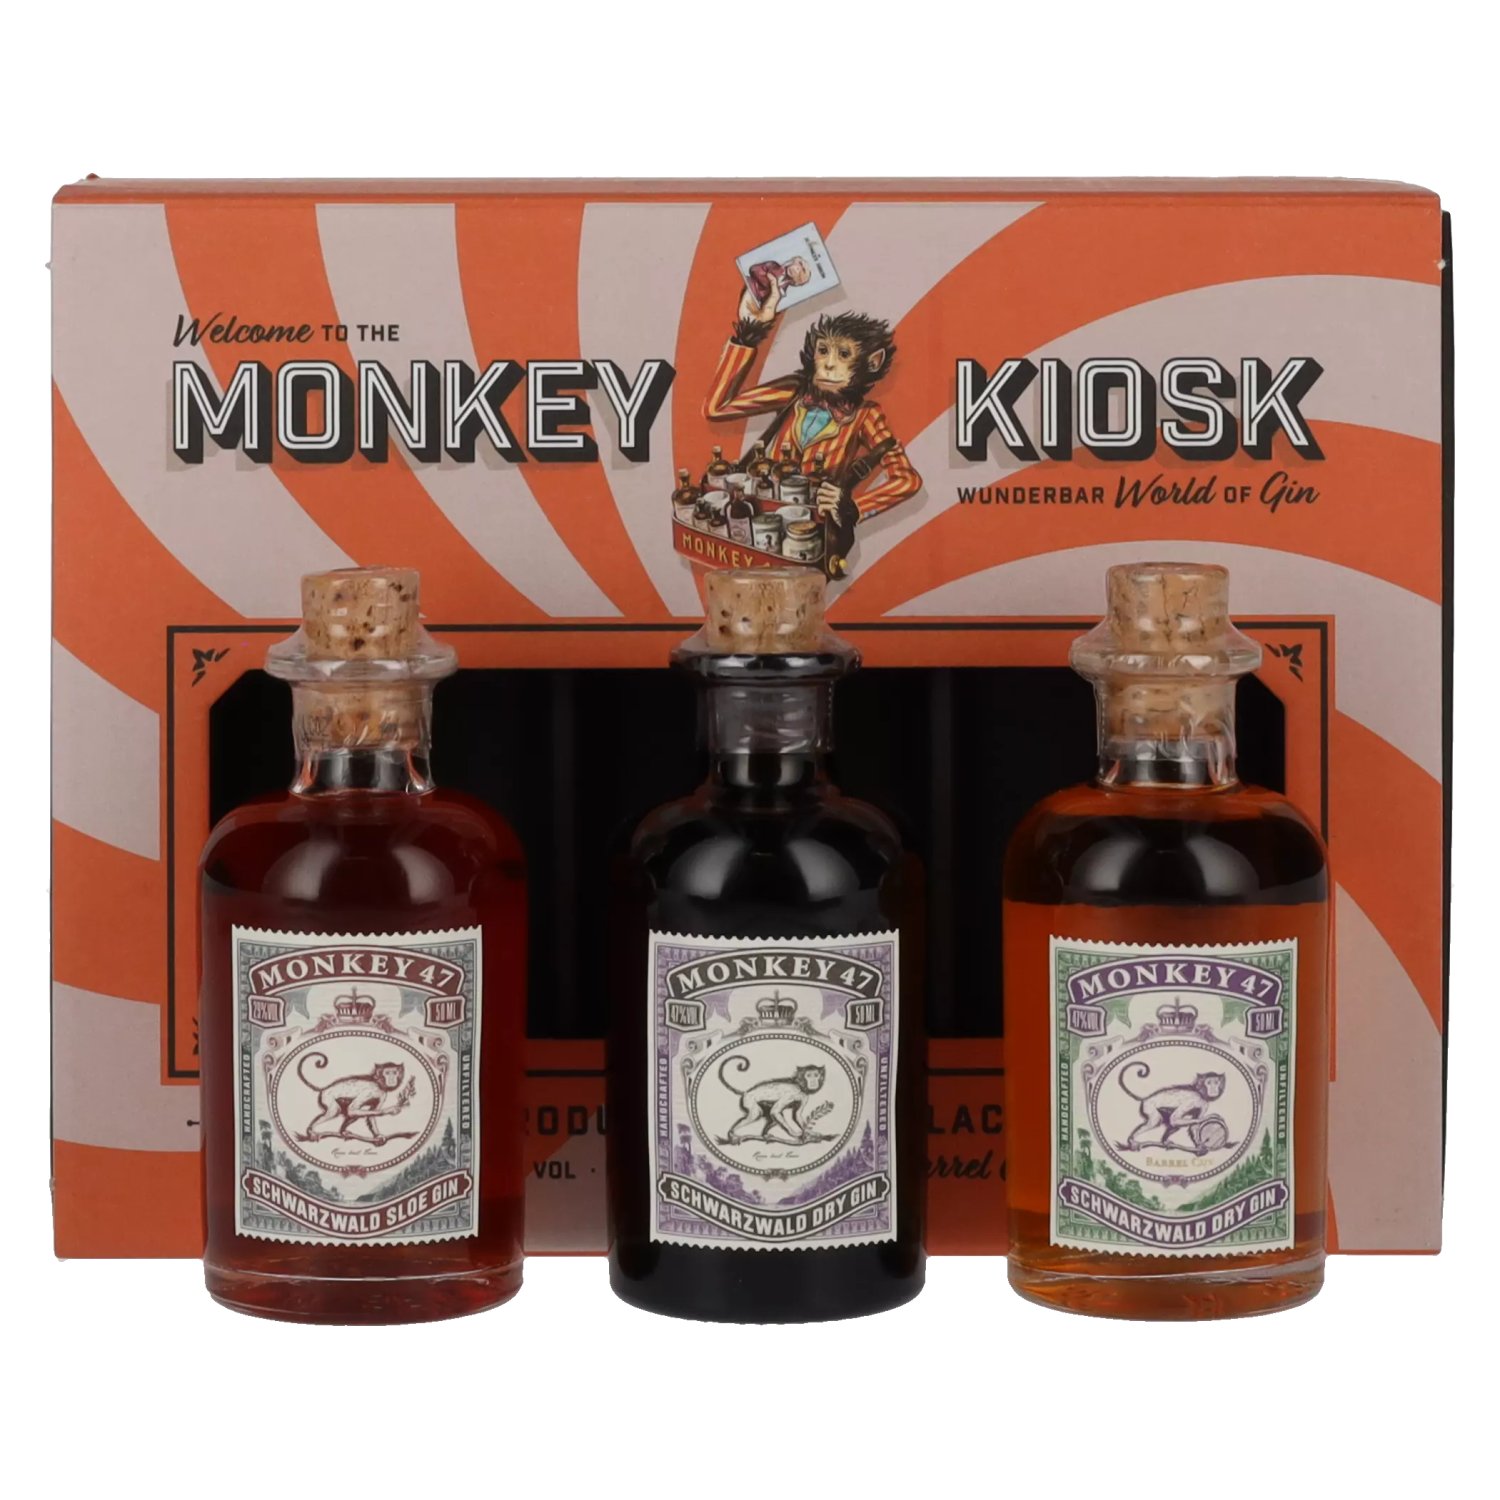 Monkey 47 in Kiosk 3x0,05l 41% Vol. Giftbox Set